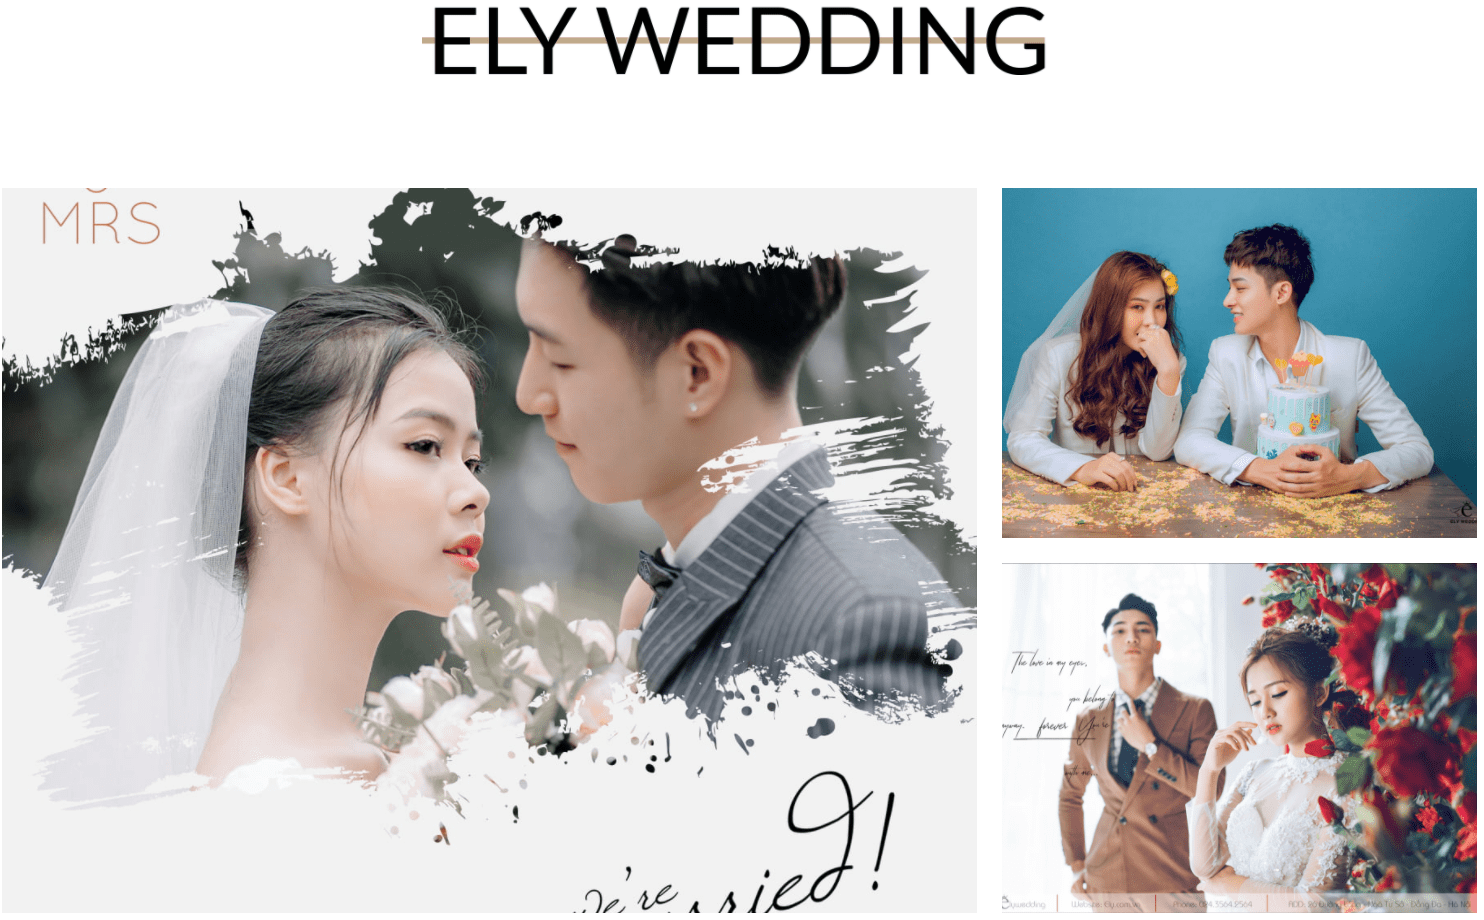 Ely Wedding - Dịch Vụ Wedding Hà Nội